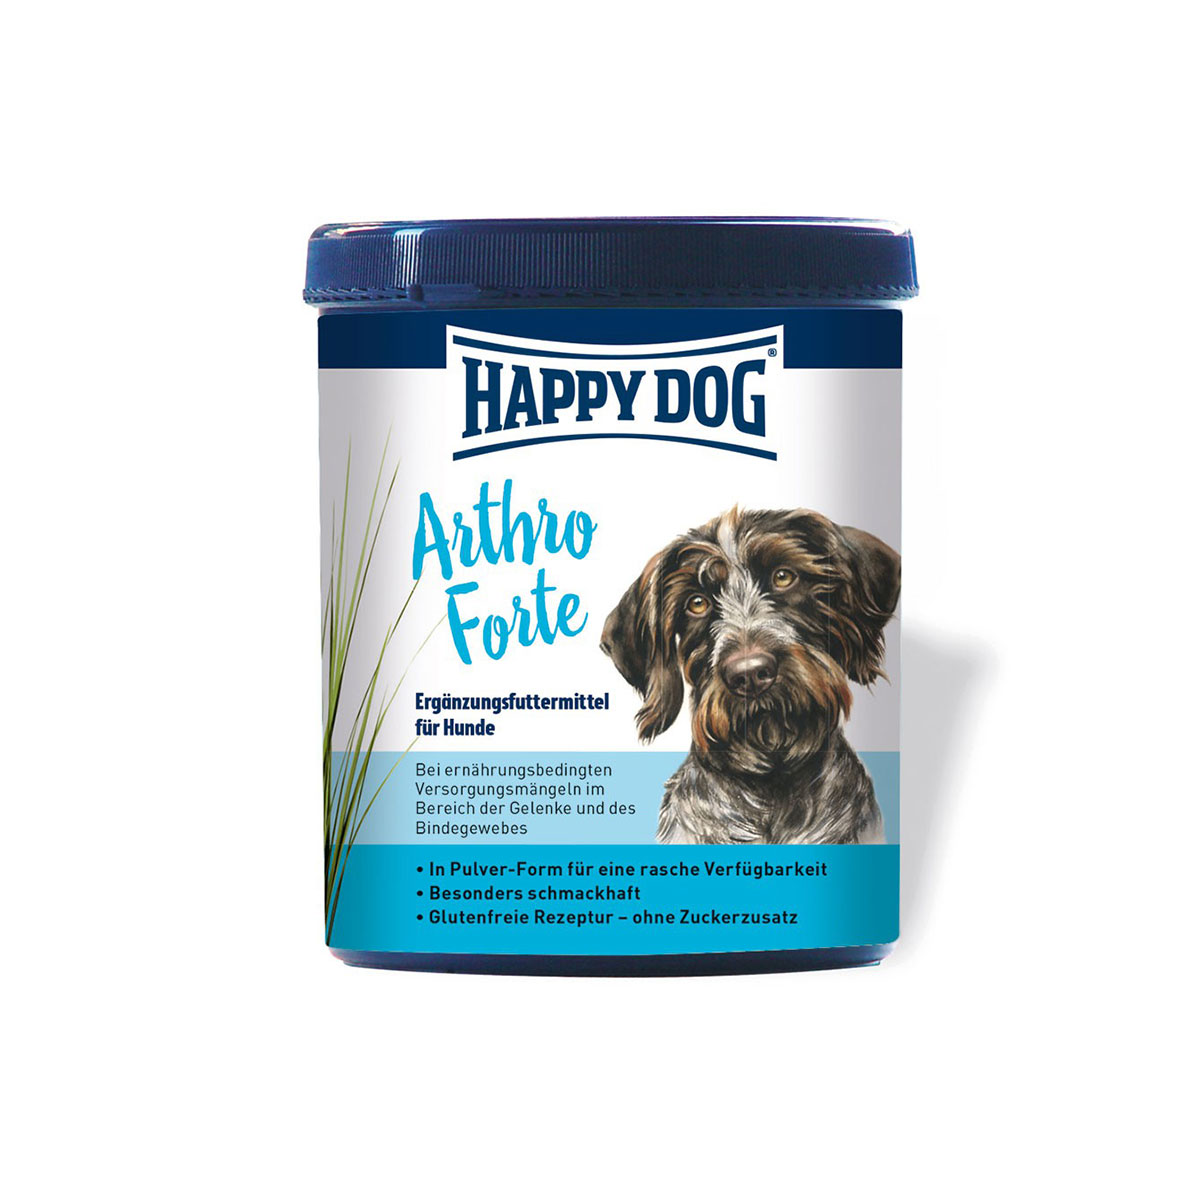 Happy Dog ArthroForte výživové doplňky